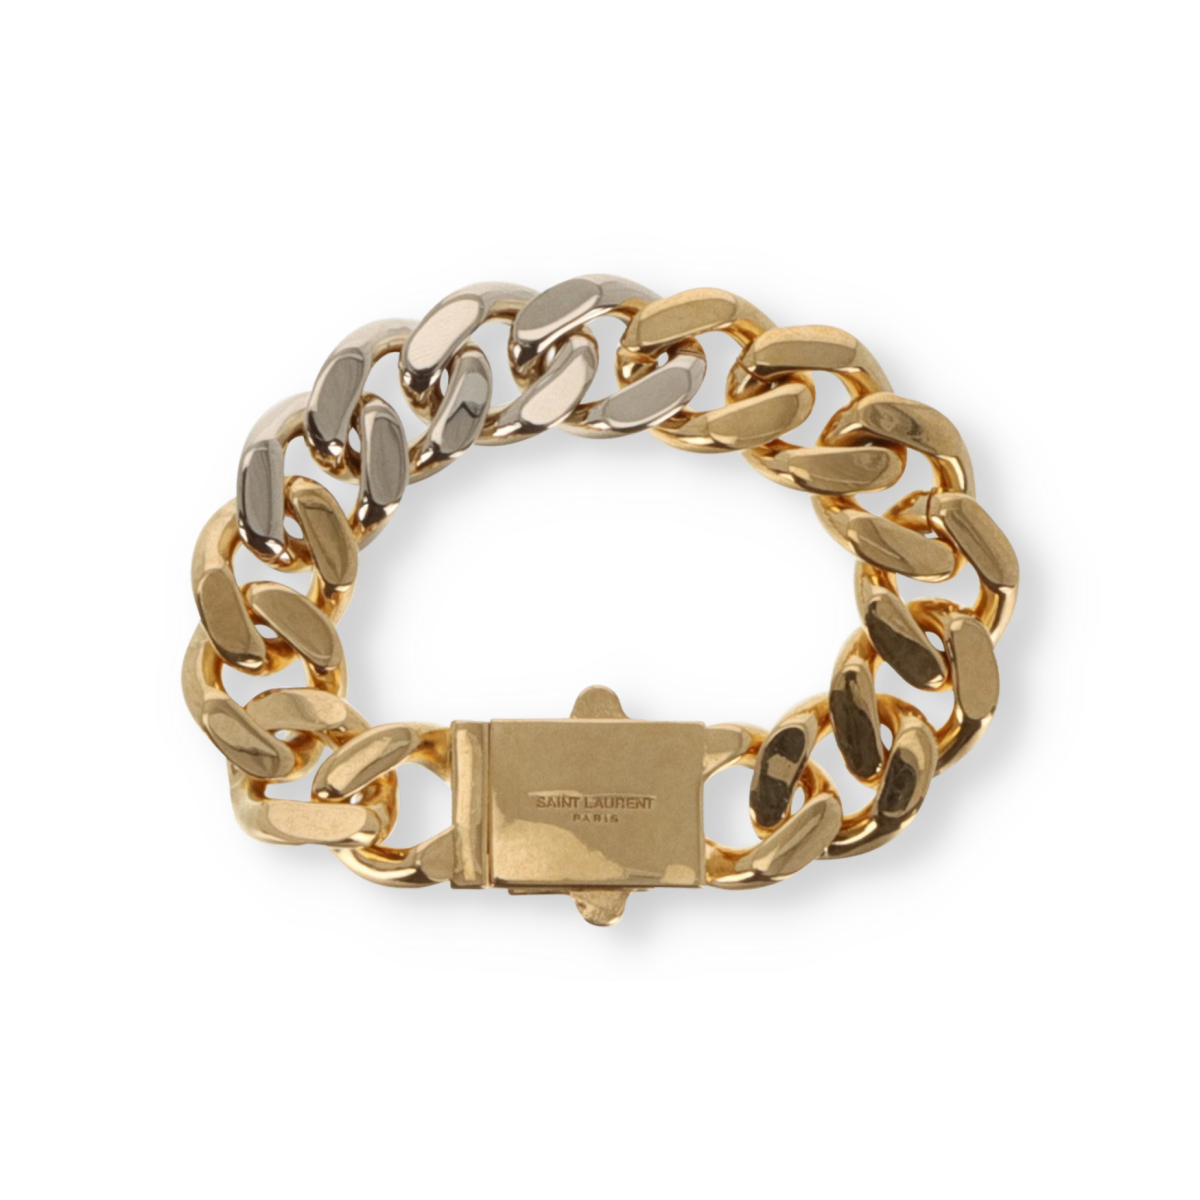 Saint Laurent Chain Bracelet